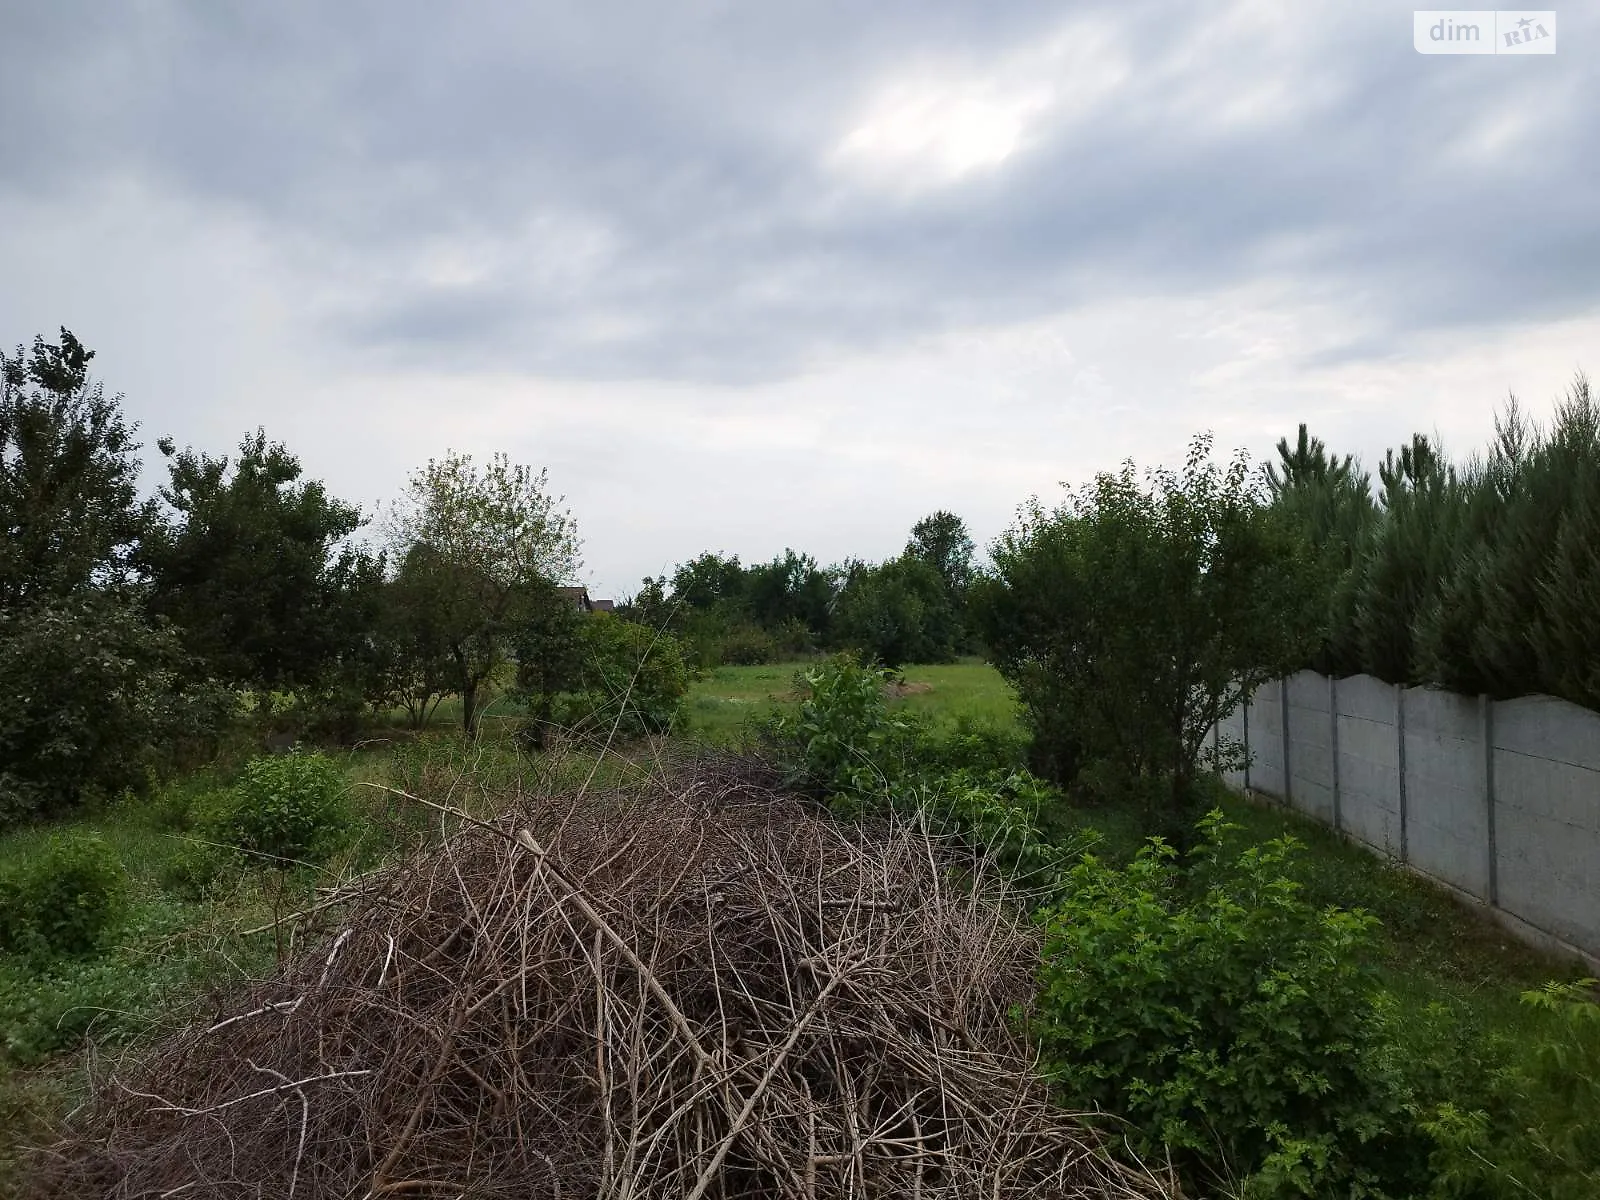 Продается земельный участок 18 соток в Днепропетровской области - фото 2